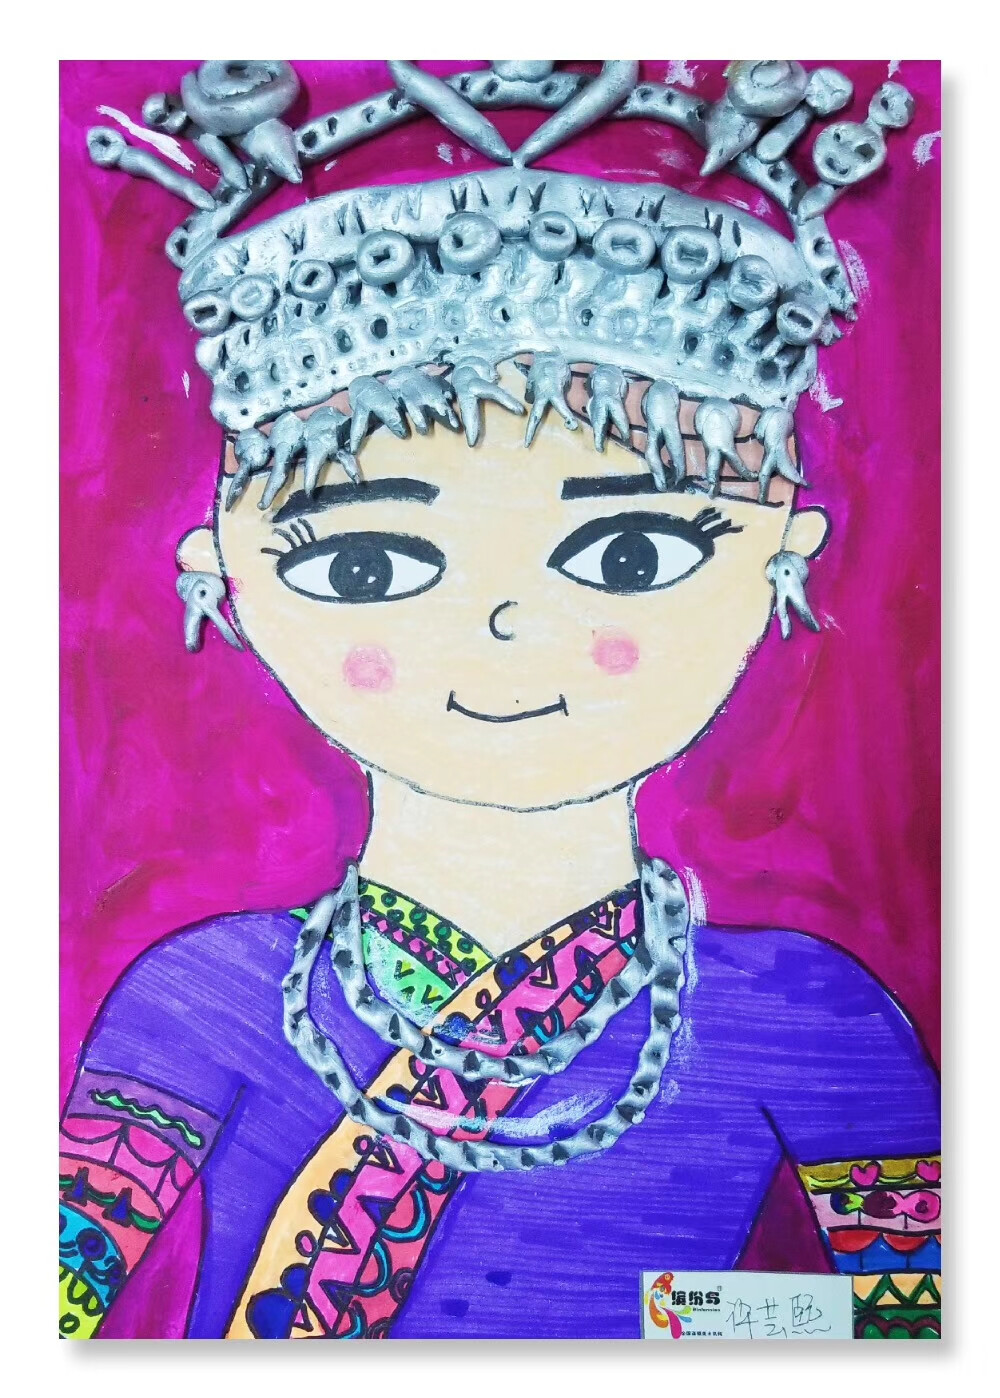 傣族儿童简笔画涂色图片